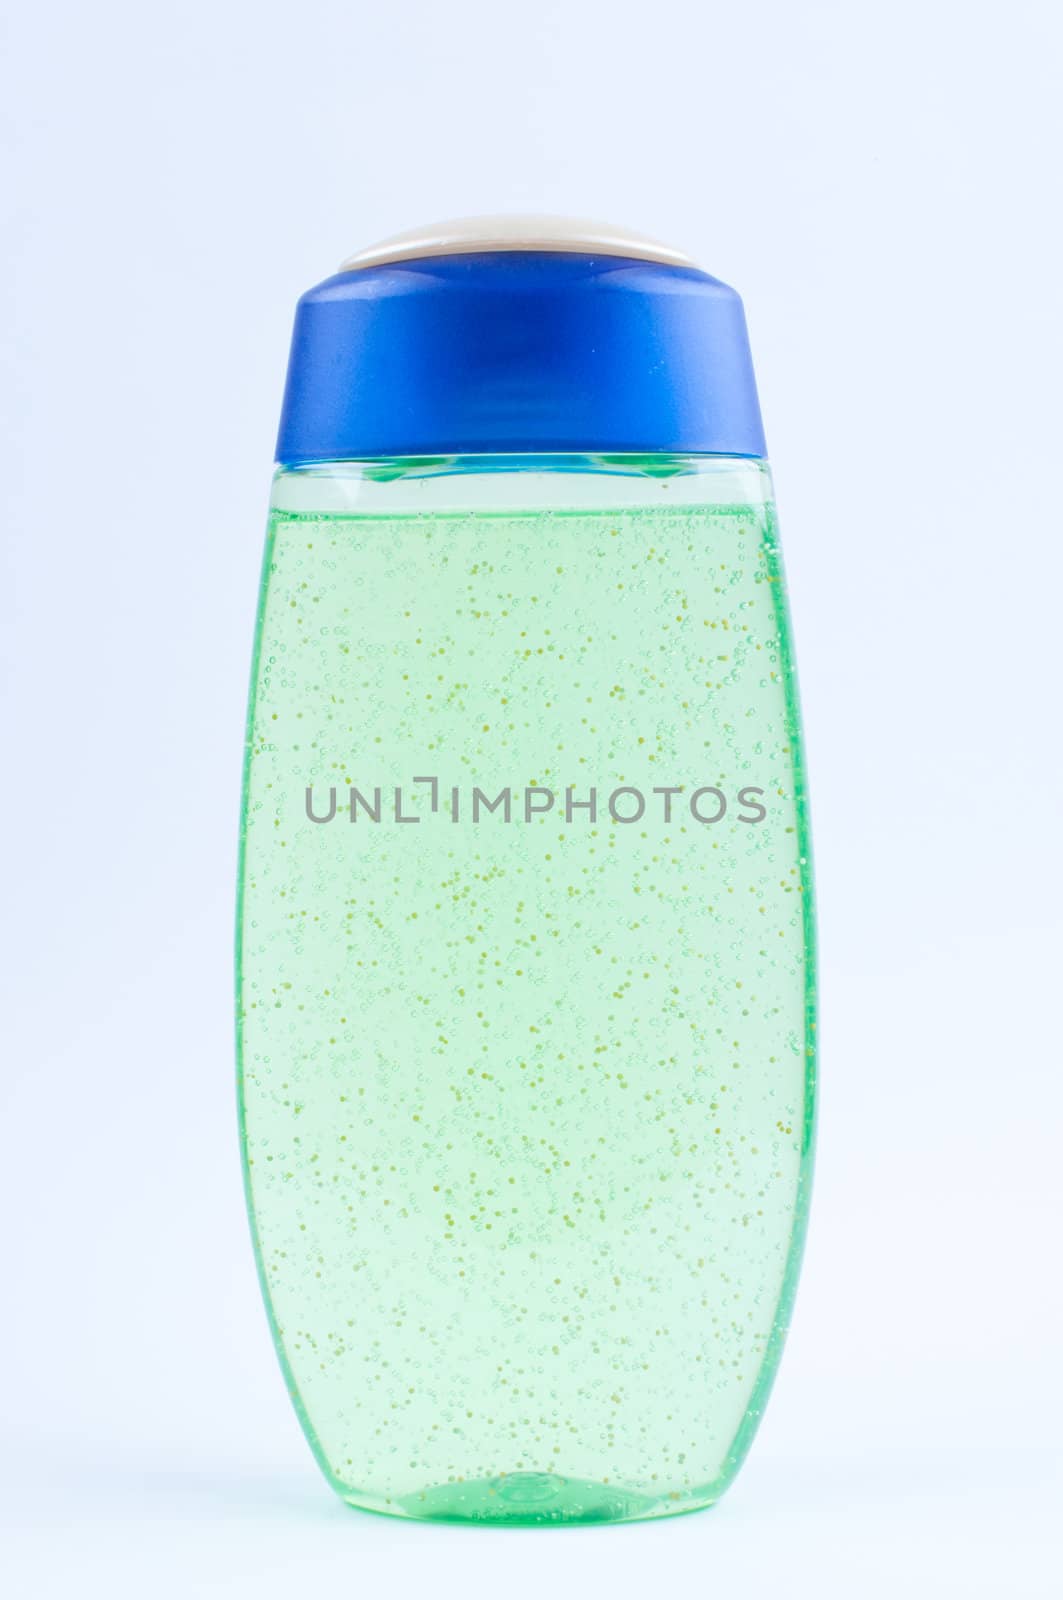 Green shower gel  in bottle on white background by Nanisimova